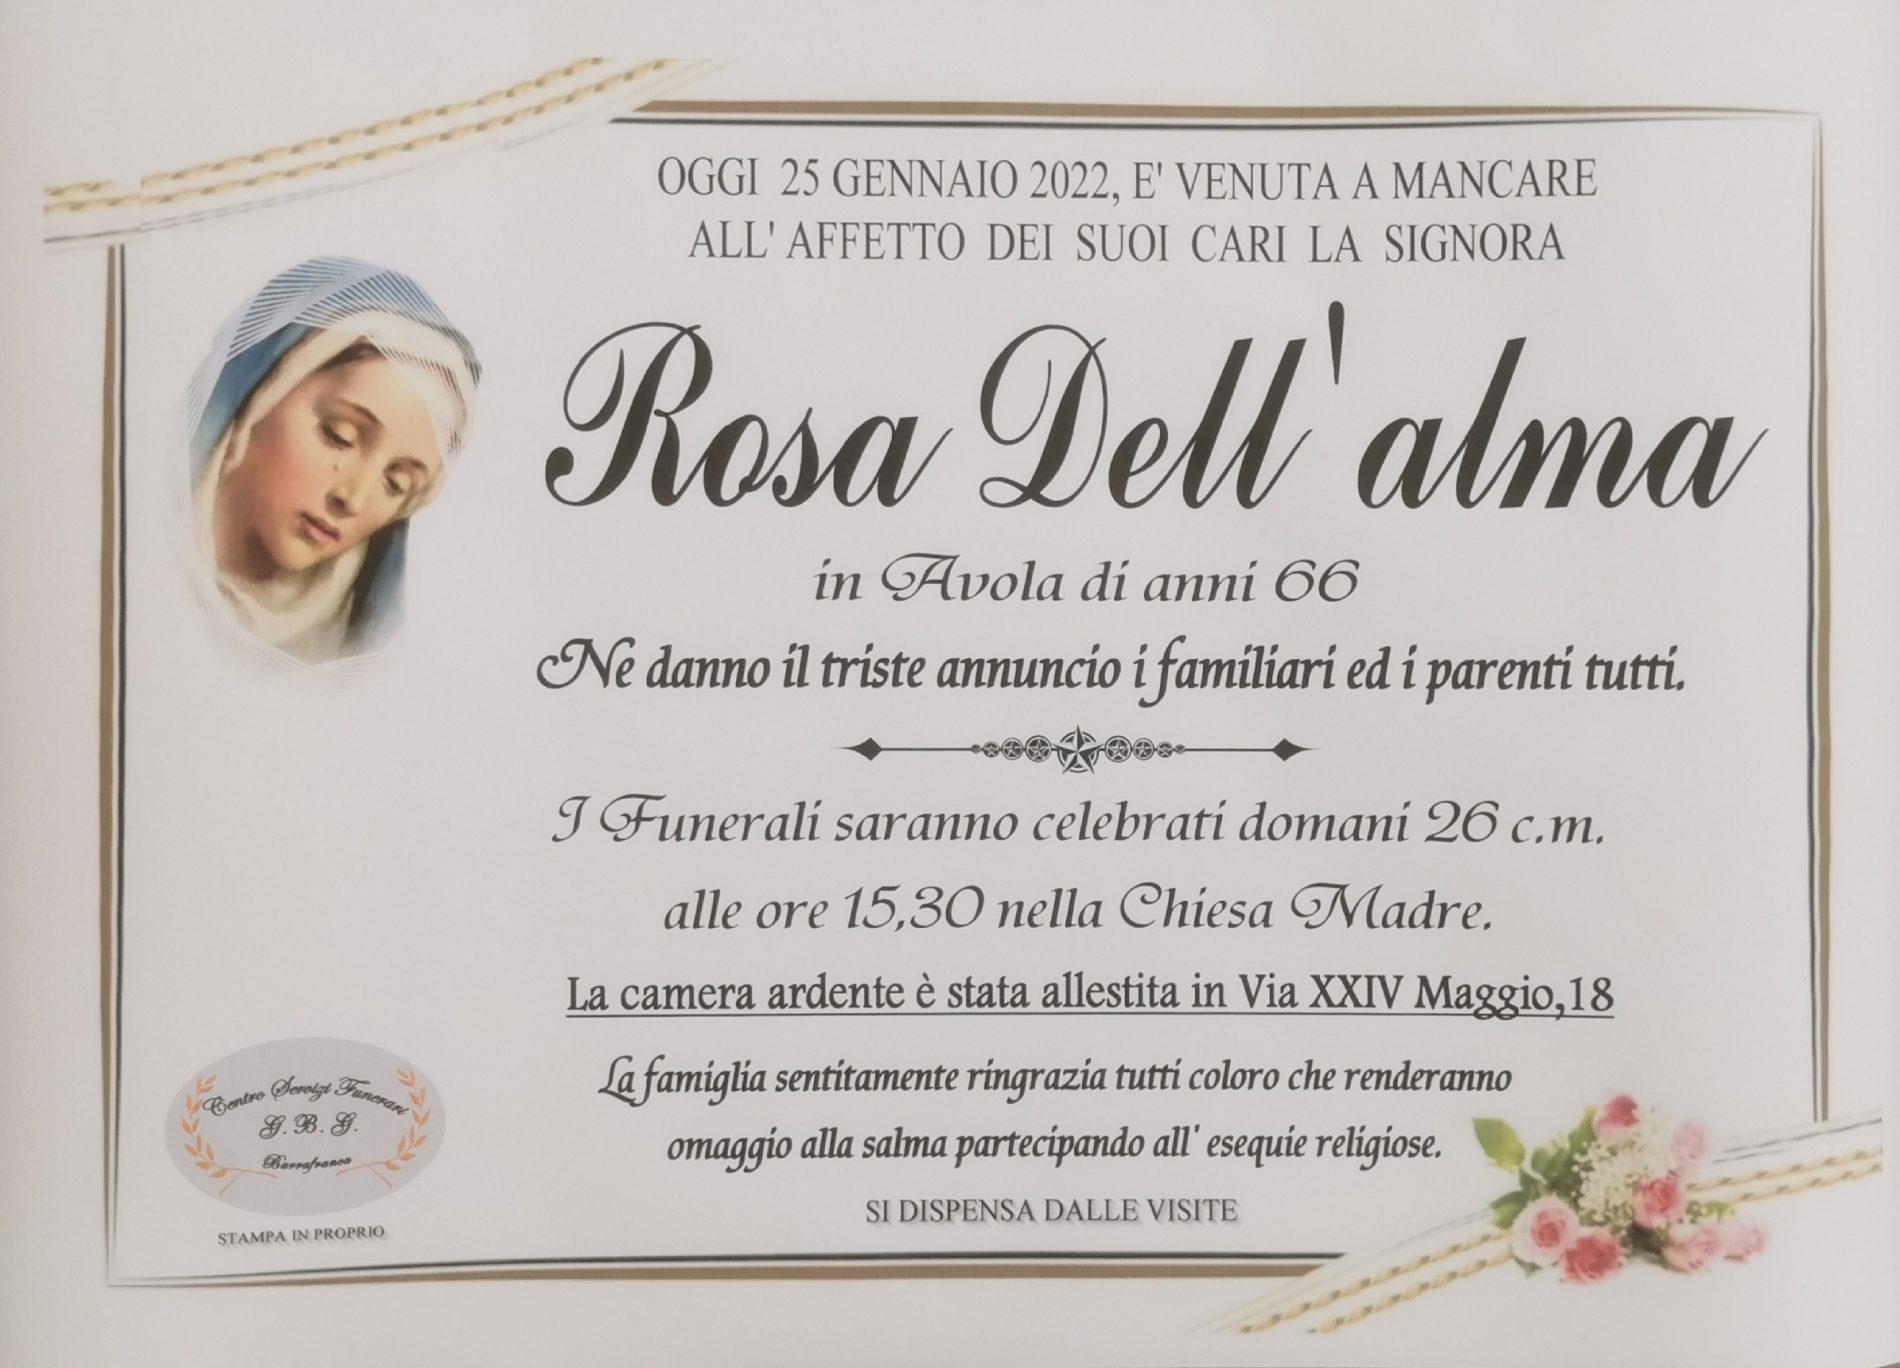 Annuncio servizi funerari agenzia G.B.C. sig.ra Rosa Dell’alma in Avola di anni 66